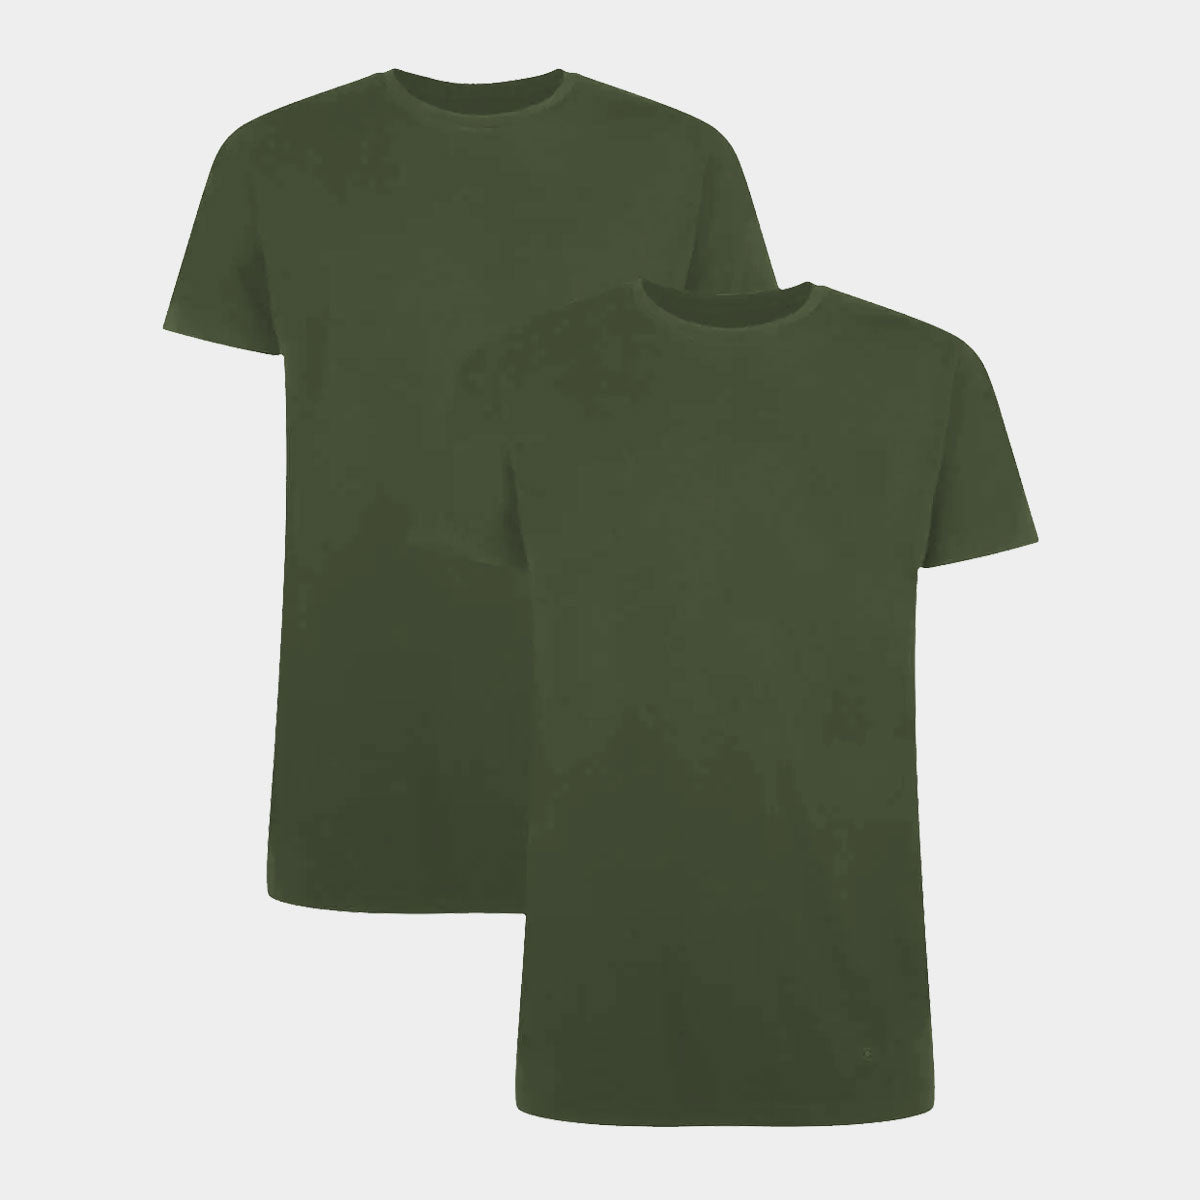 Billede af 2 stk bambus T-shirt mørkegrøn med crew neck til herre fra Bamboo Basic, S